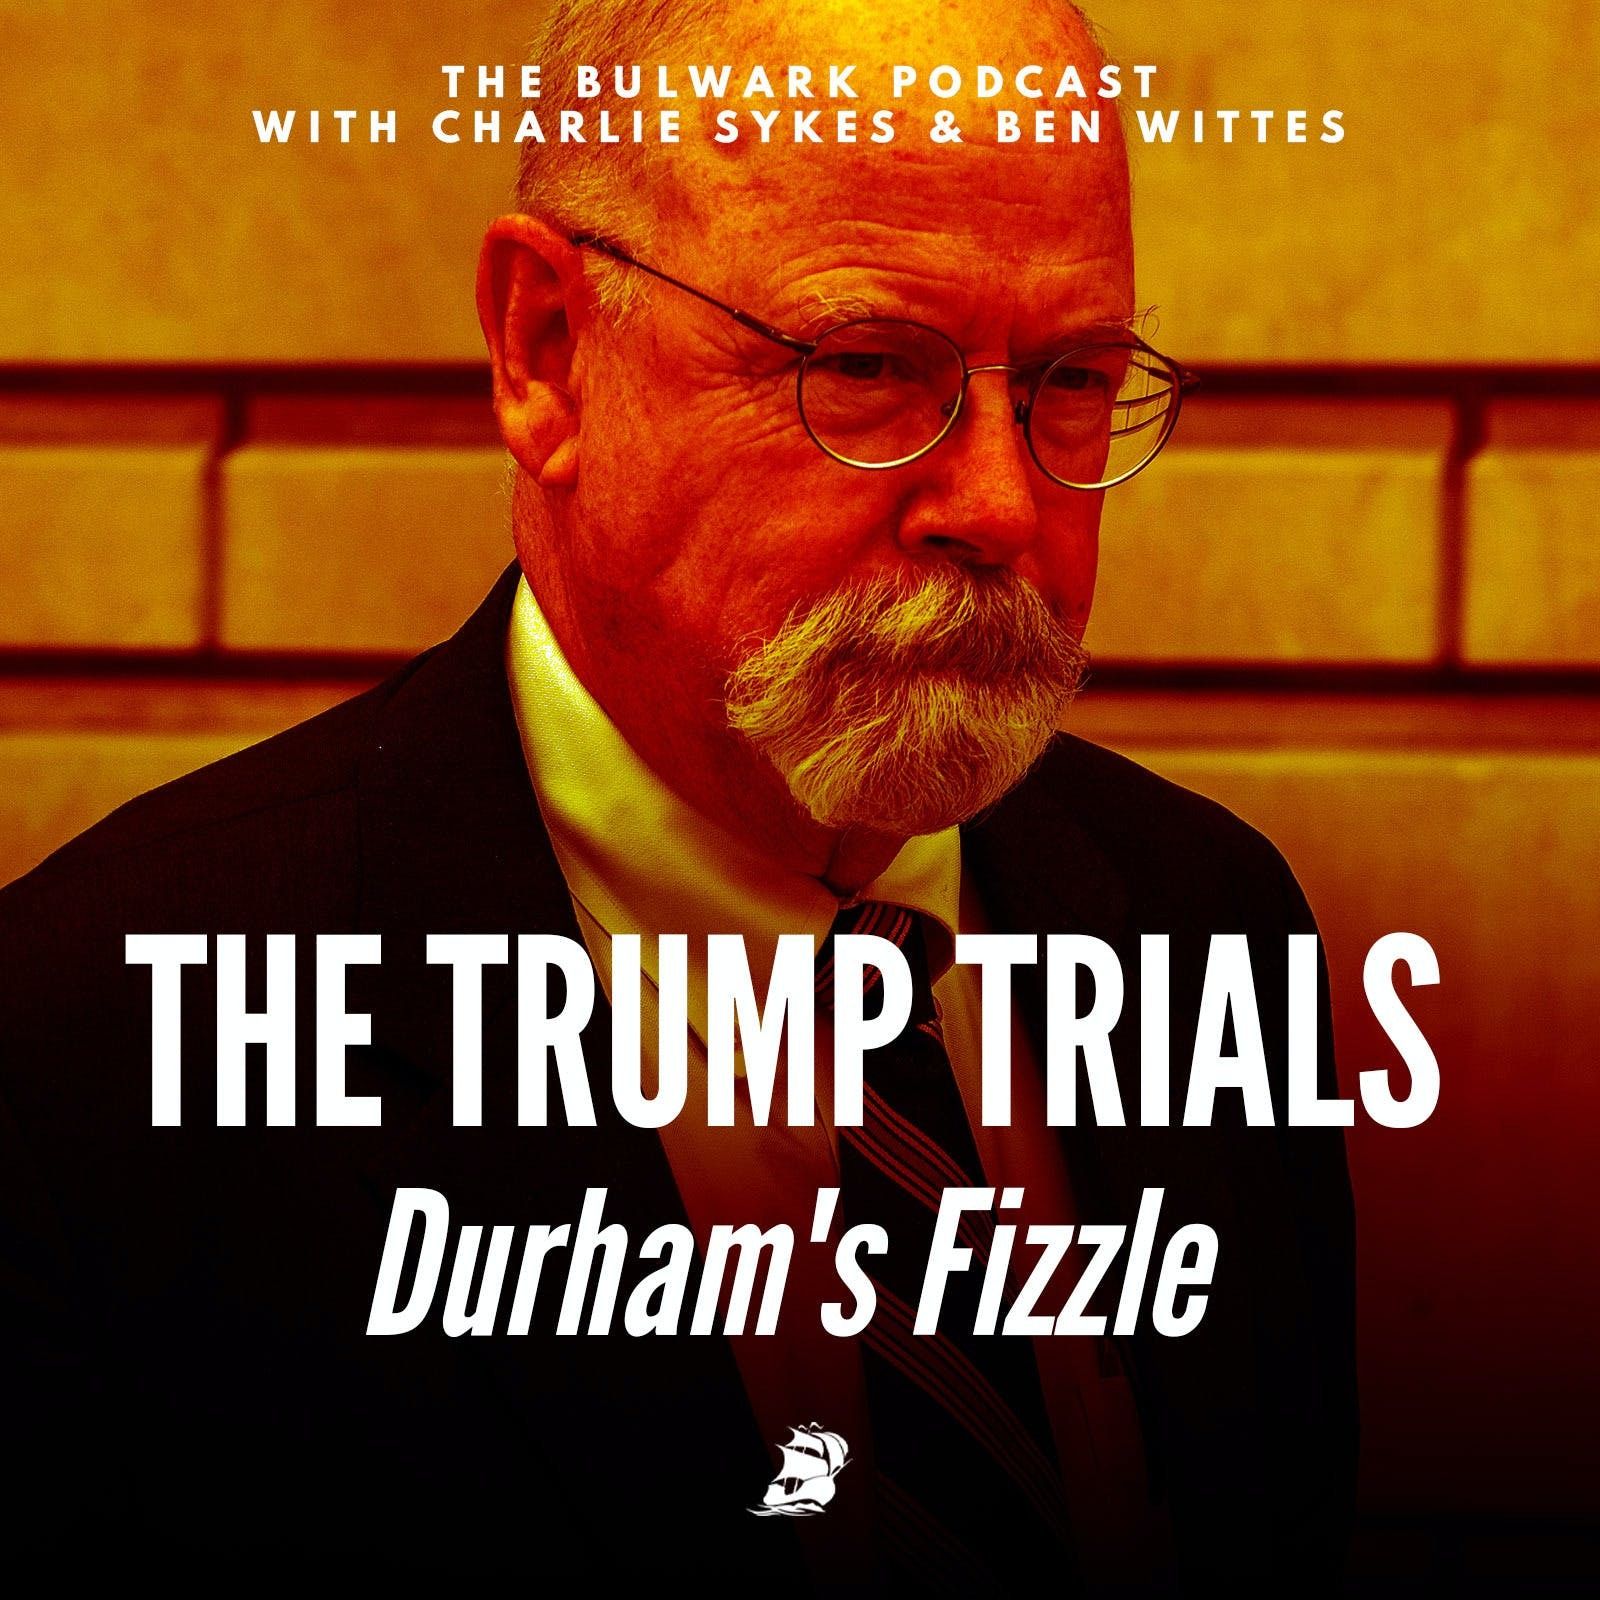 Durham's Fizzle